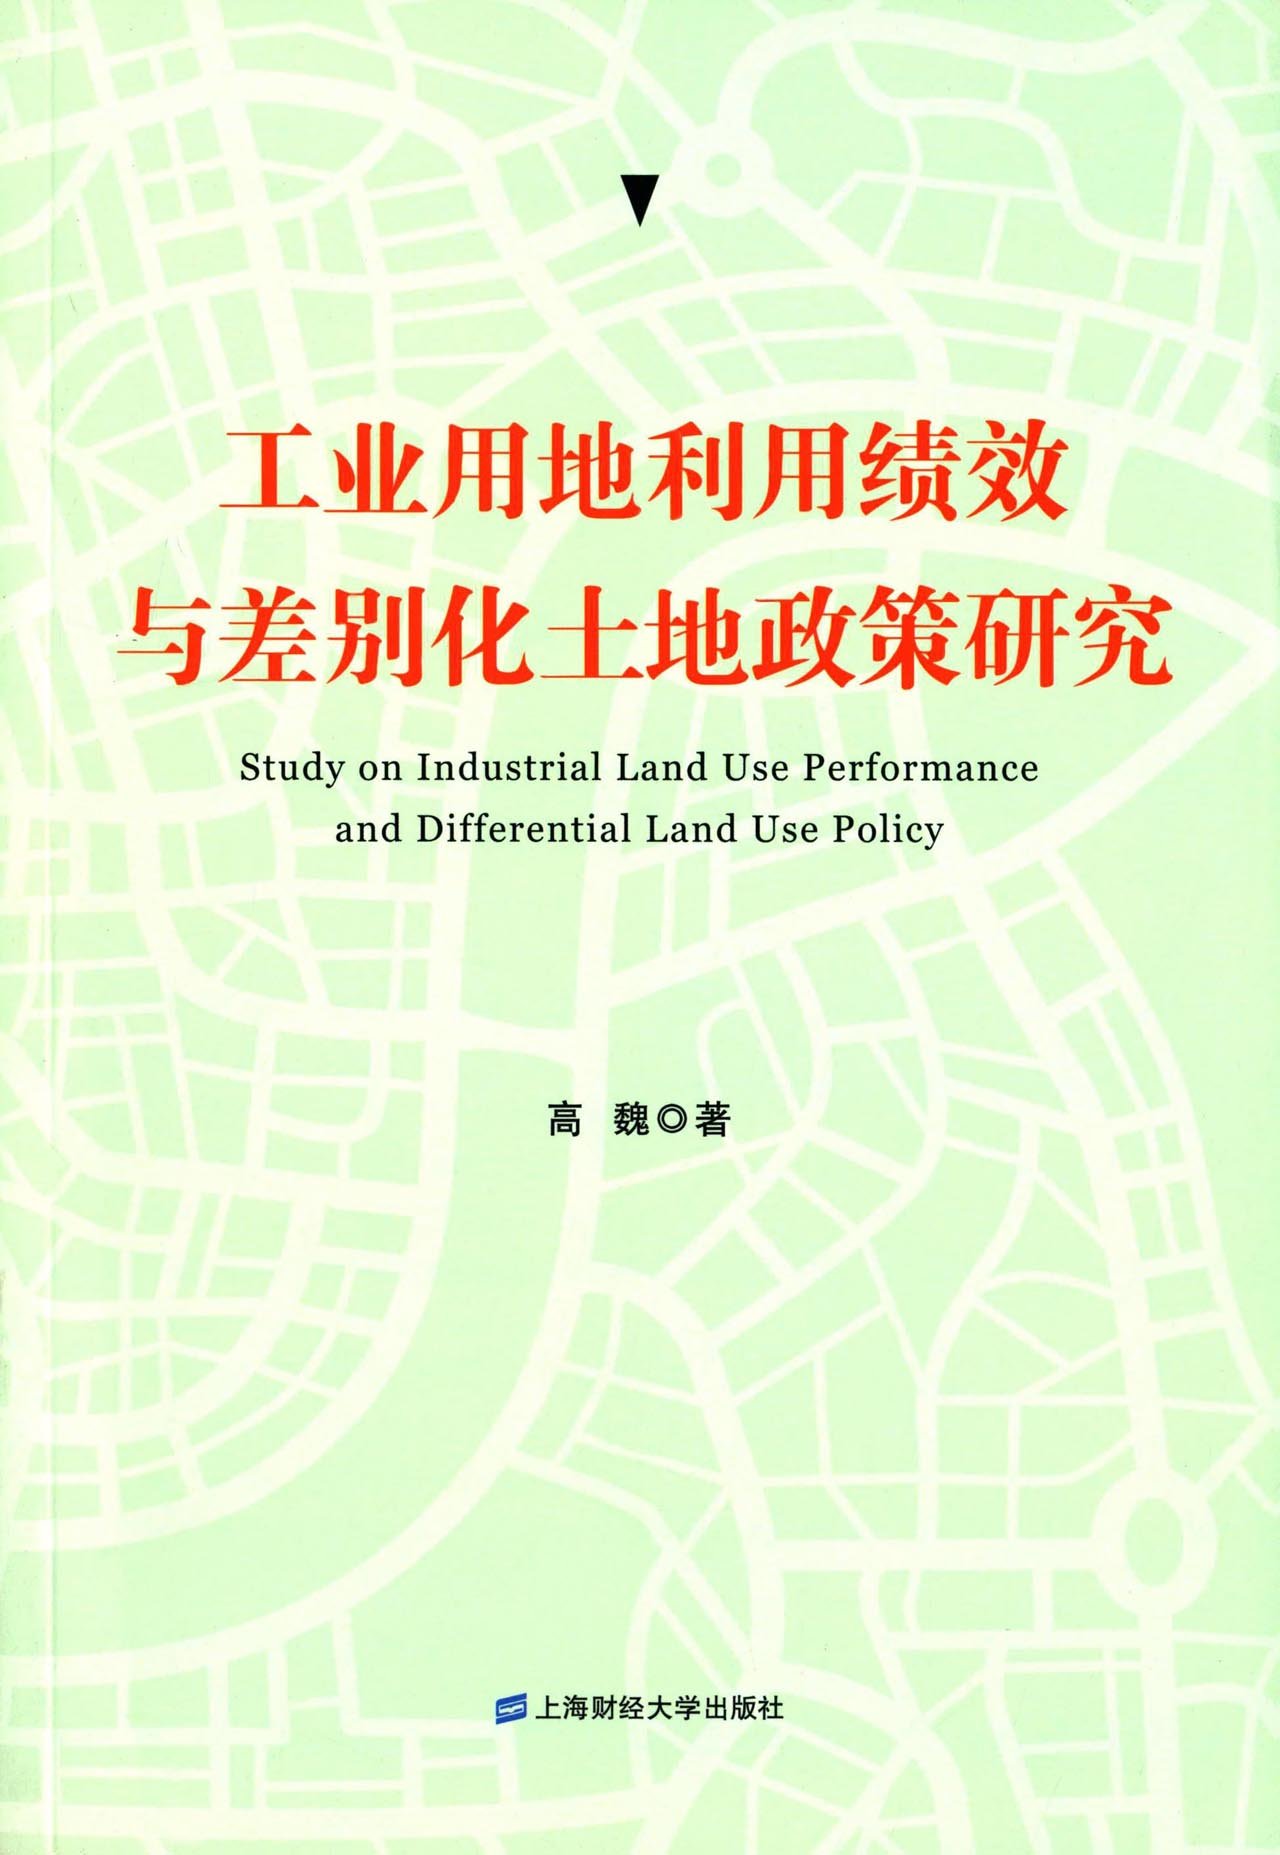 工业用地利用绩效与差别化土地政策研究 kindle格式下载